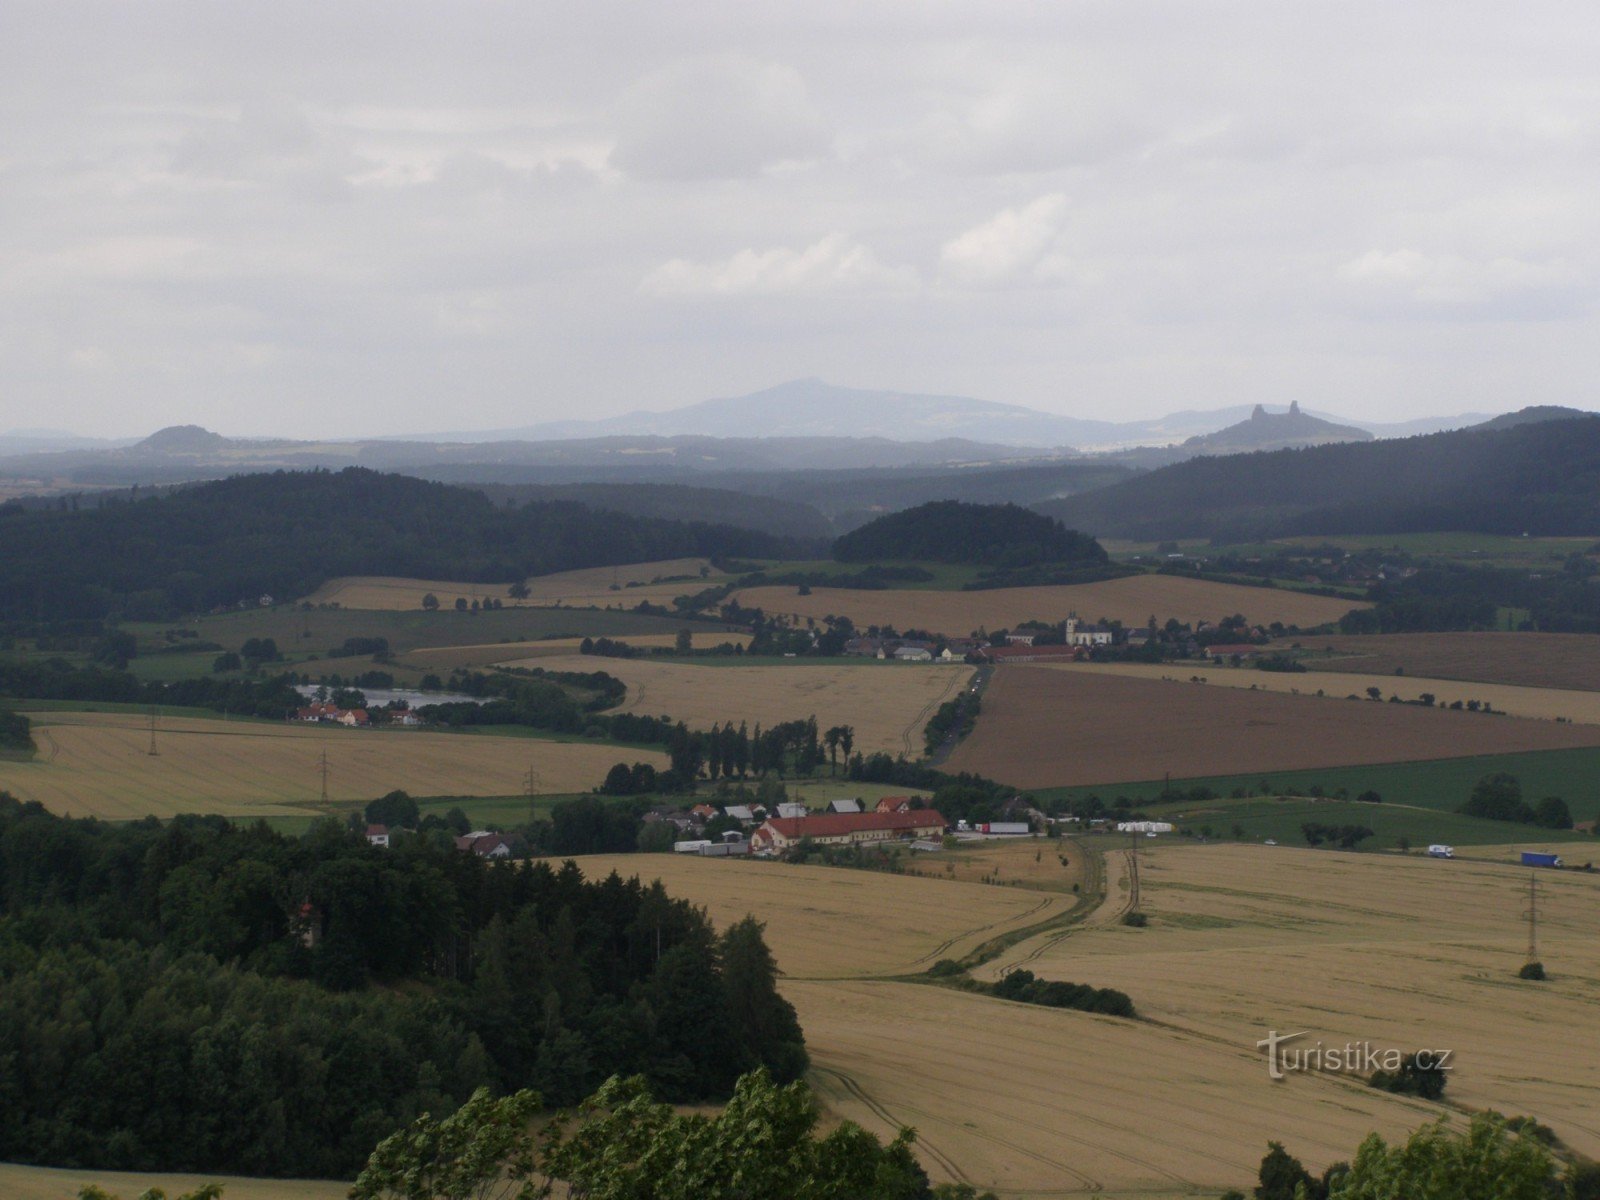 Veliš - quang cảnh của Vyskeř, Trosky và trong nền Ještěd